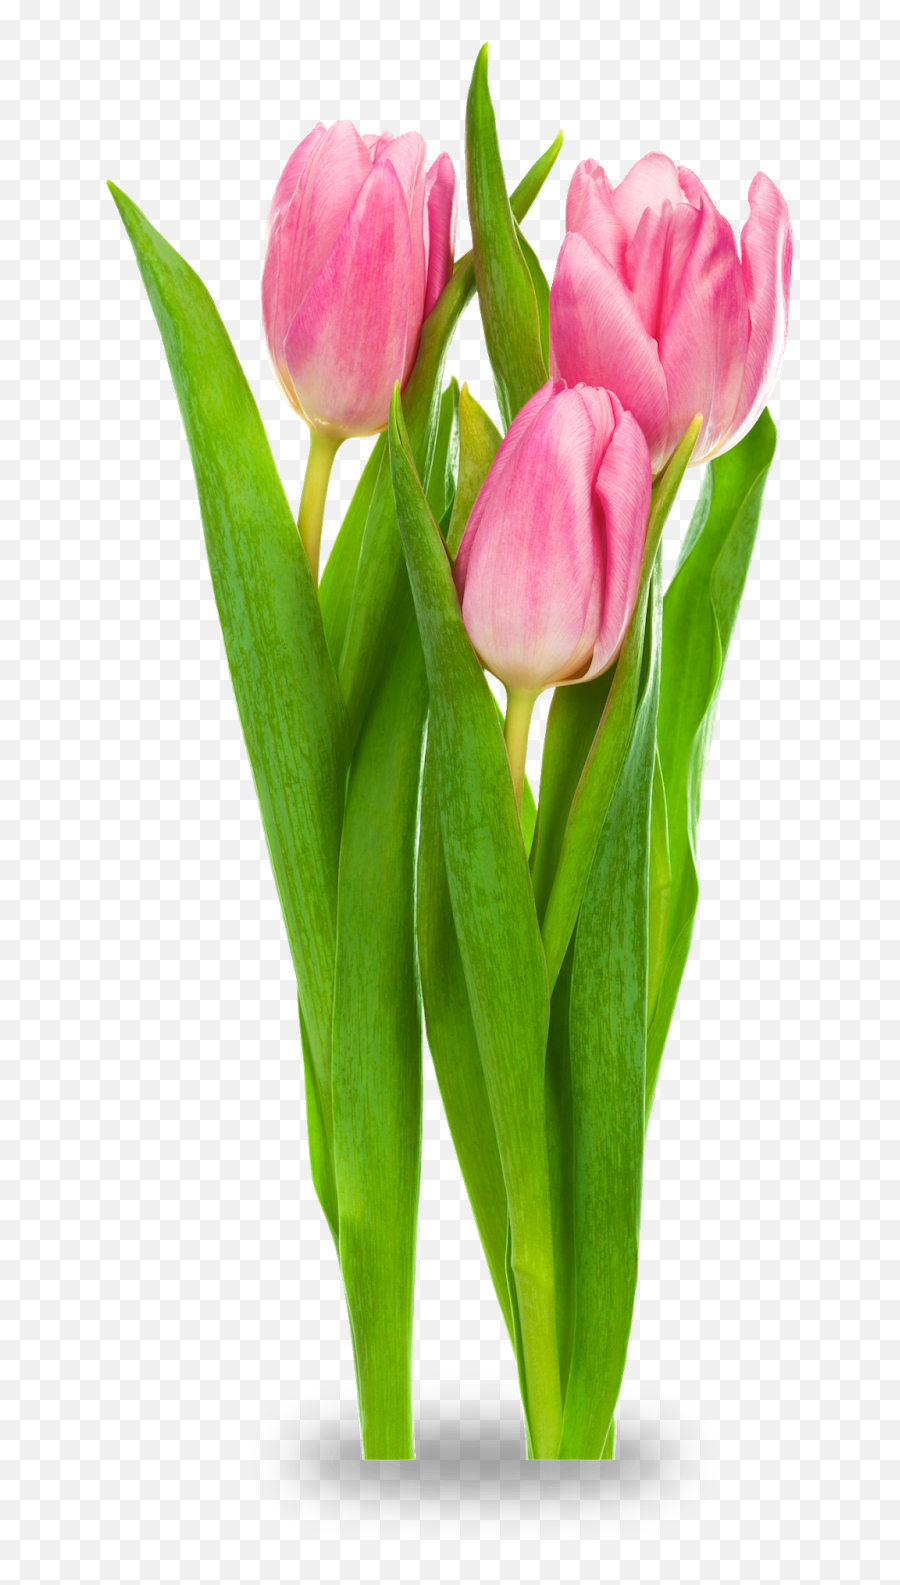 Cut Flowers Transparent Background - Transparent Tulips Flower Png Emoji,Flowers Transparent Background